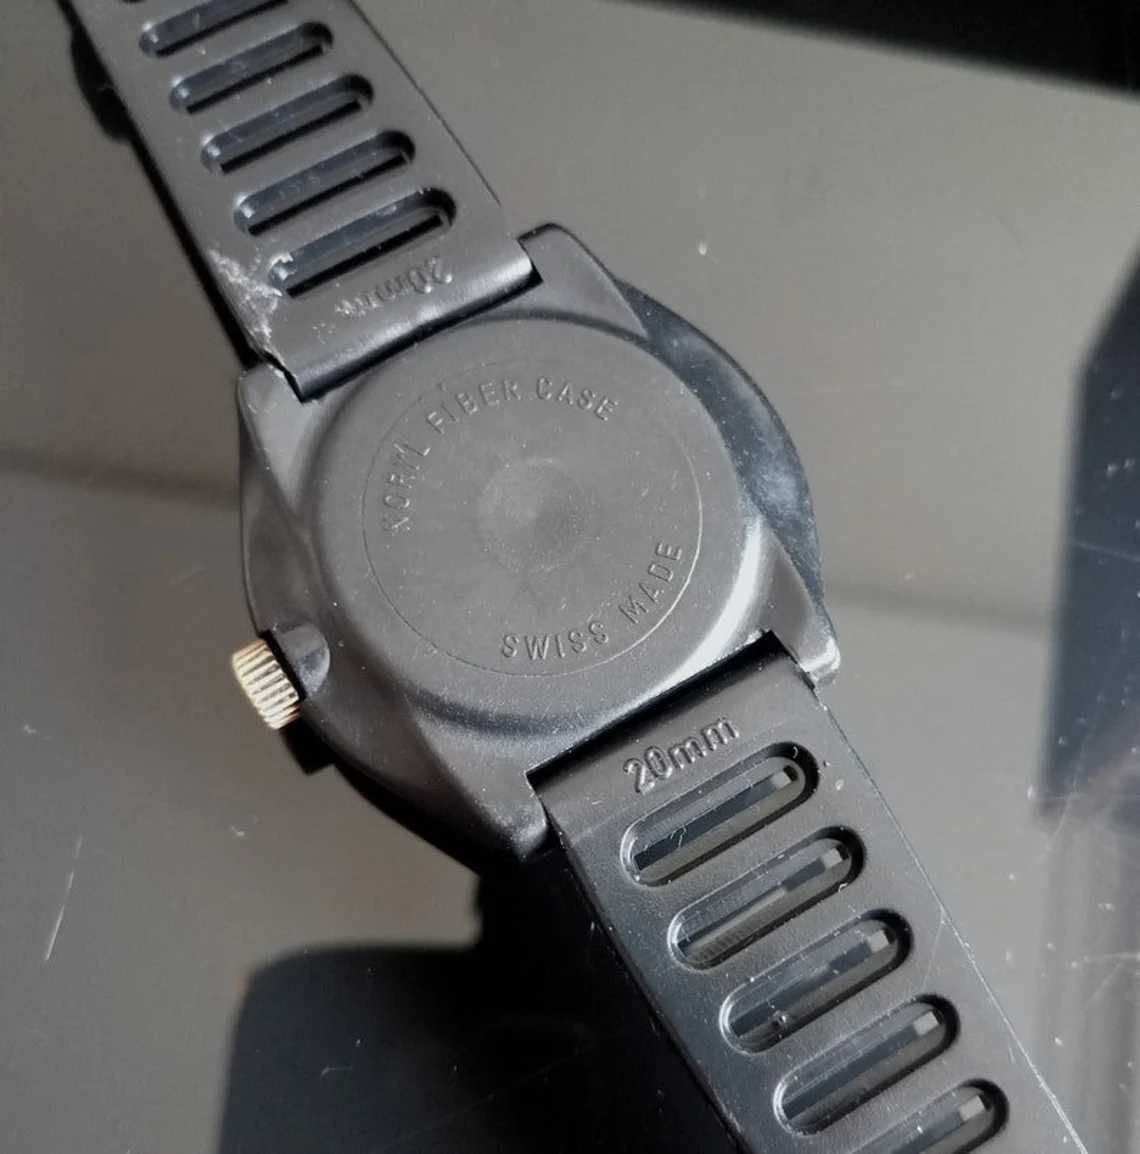 Swiss Tropic 2000 швейцарски автоматичен часовник мистери диал